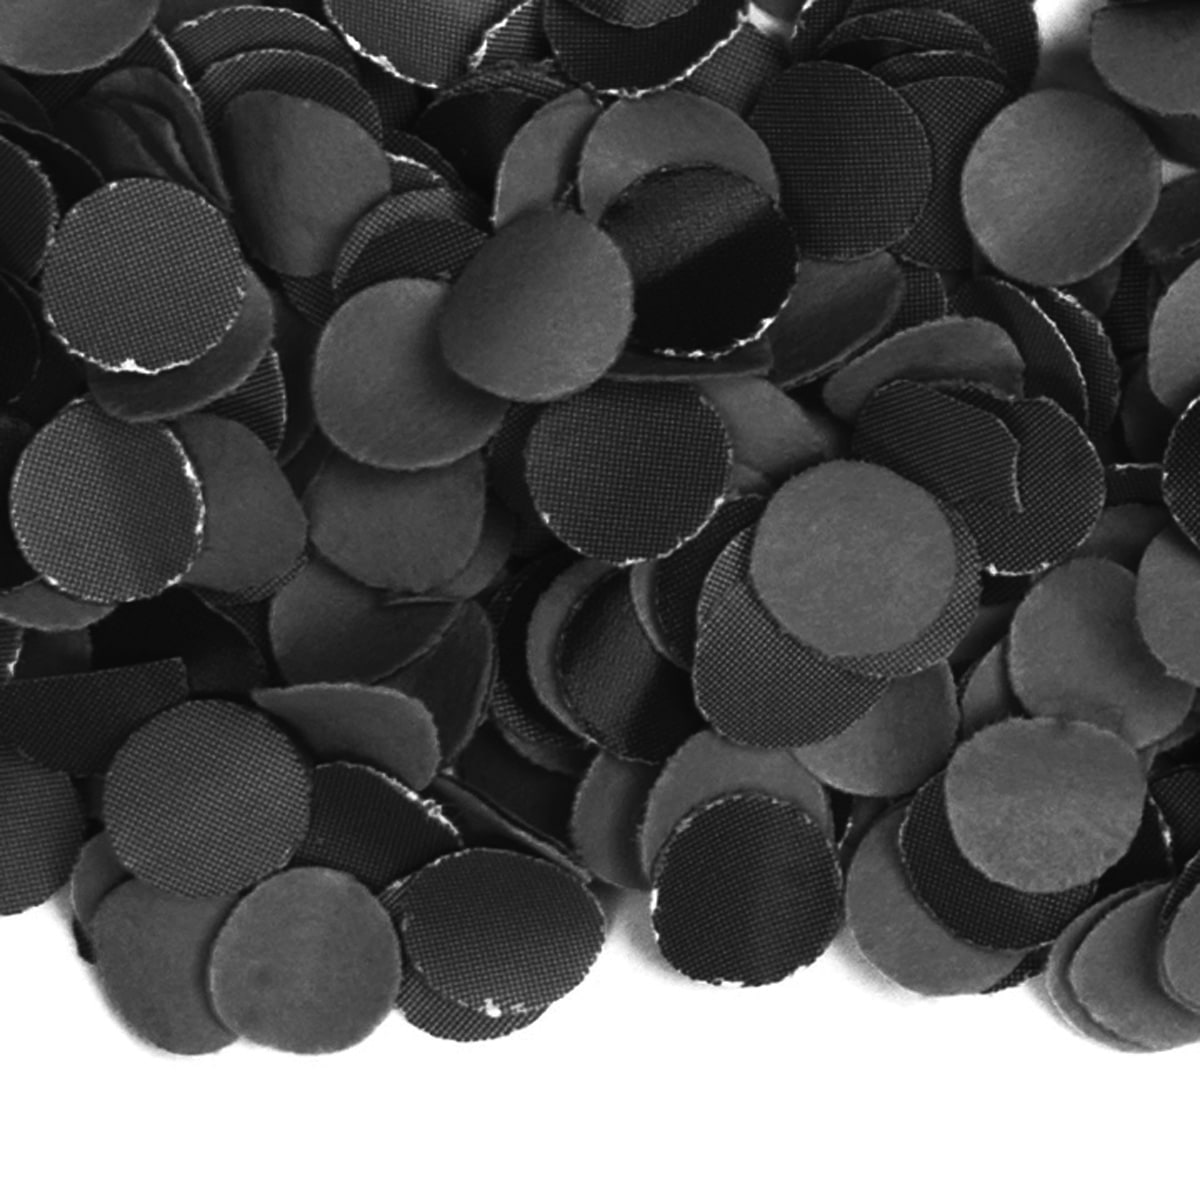 Feest confetti 1 kilo zwart